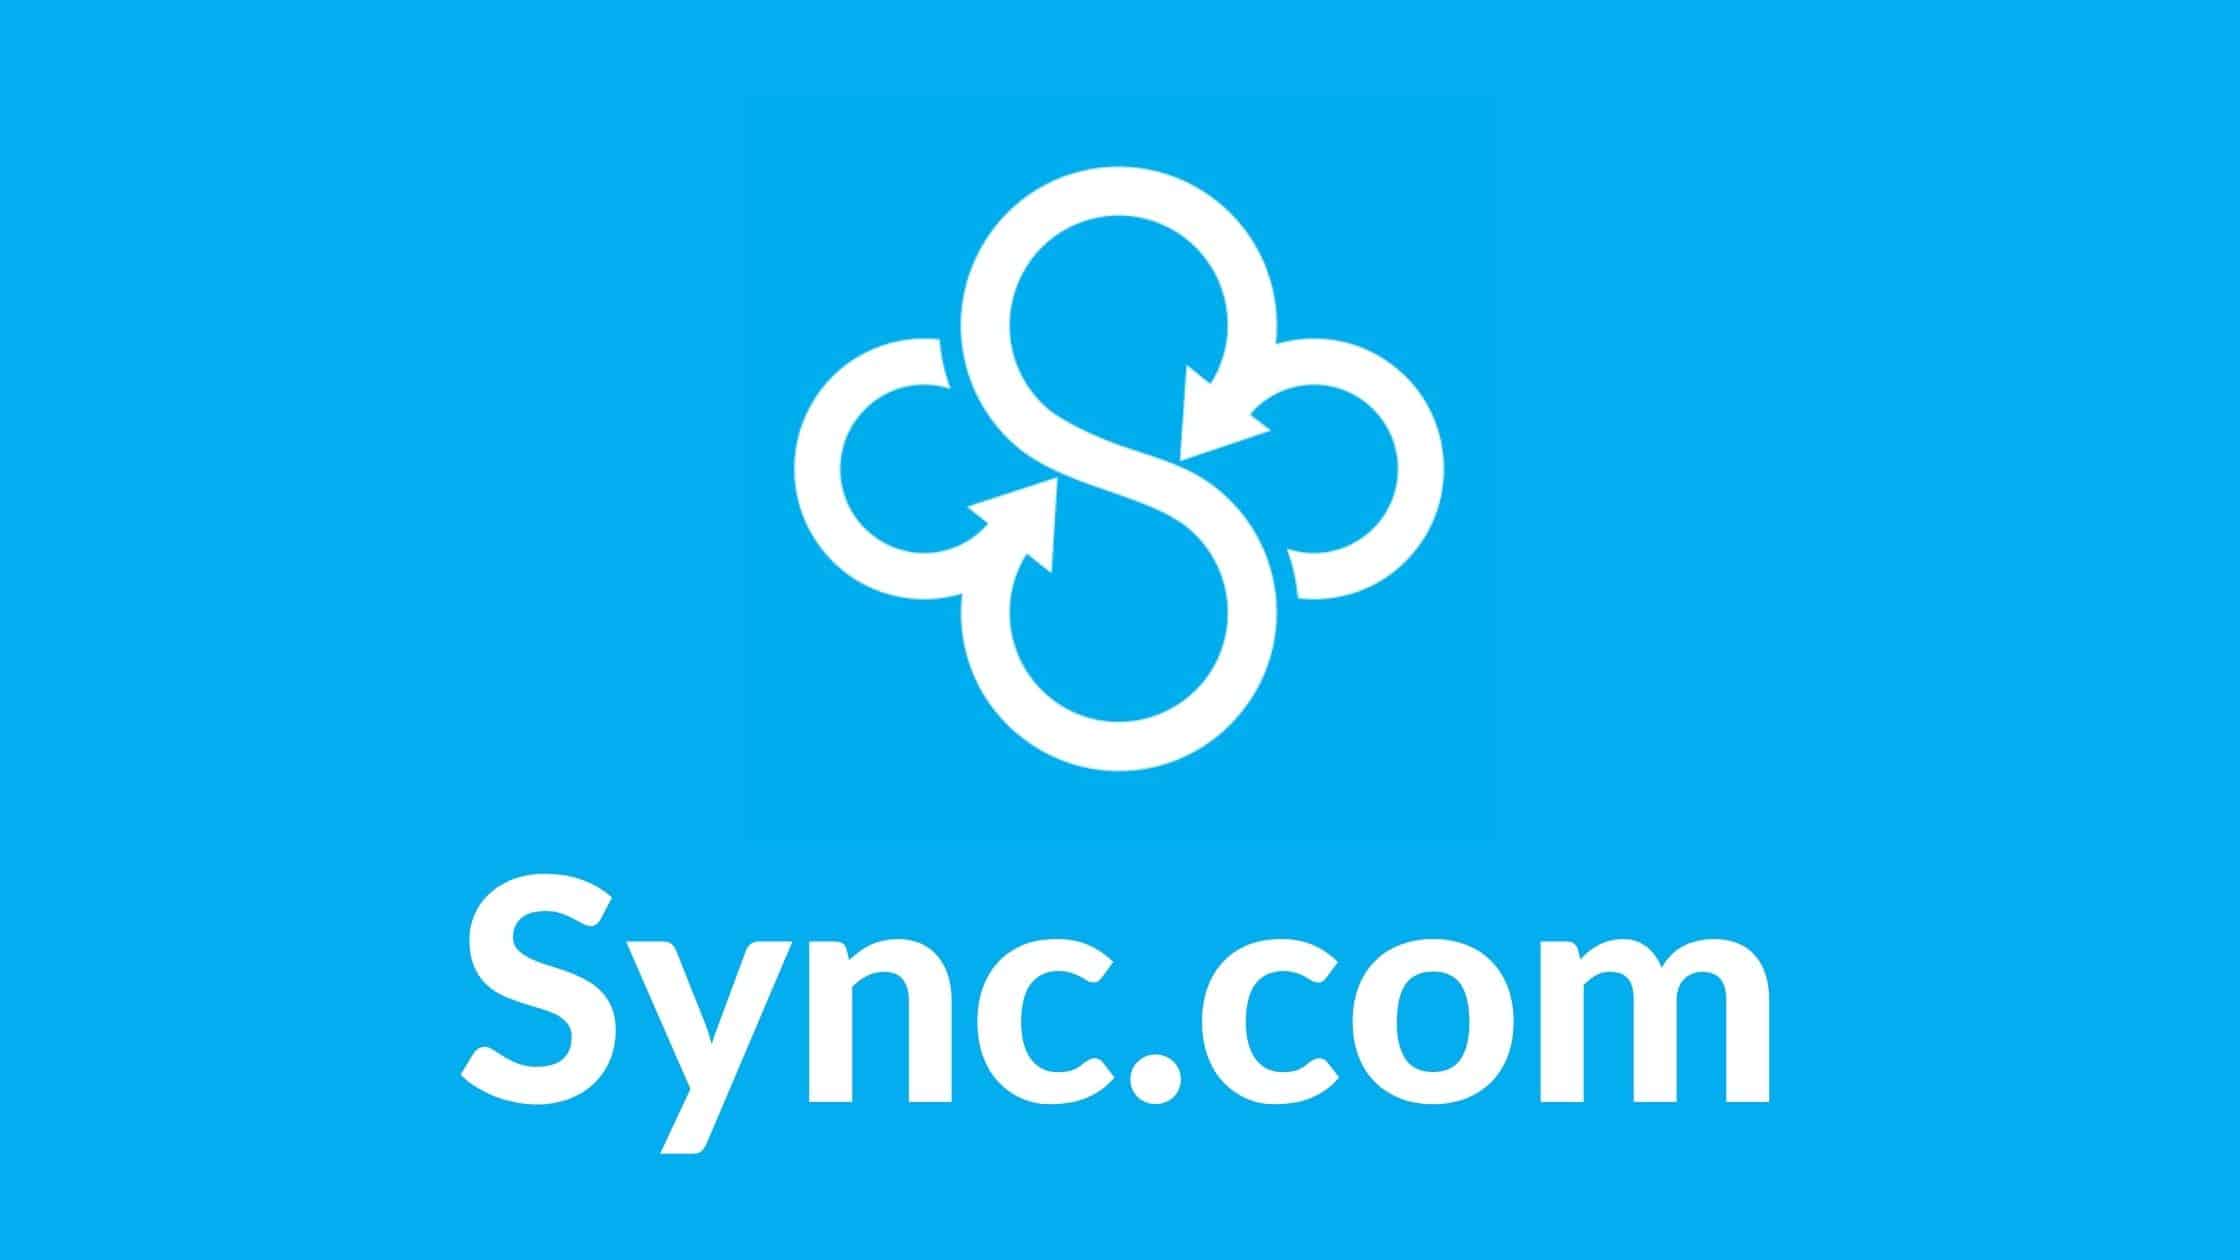 07 Sync.com